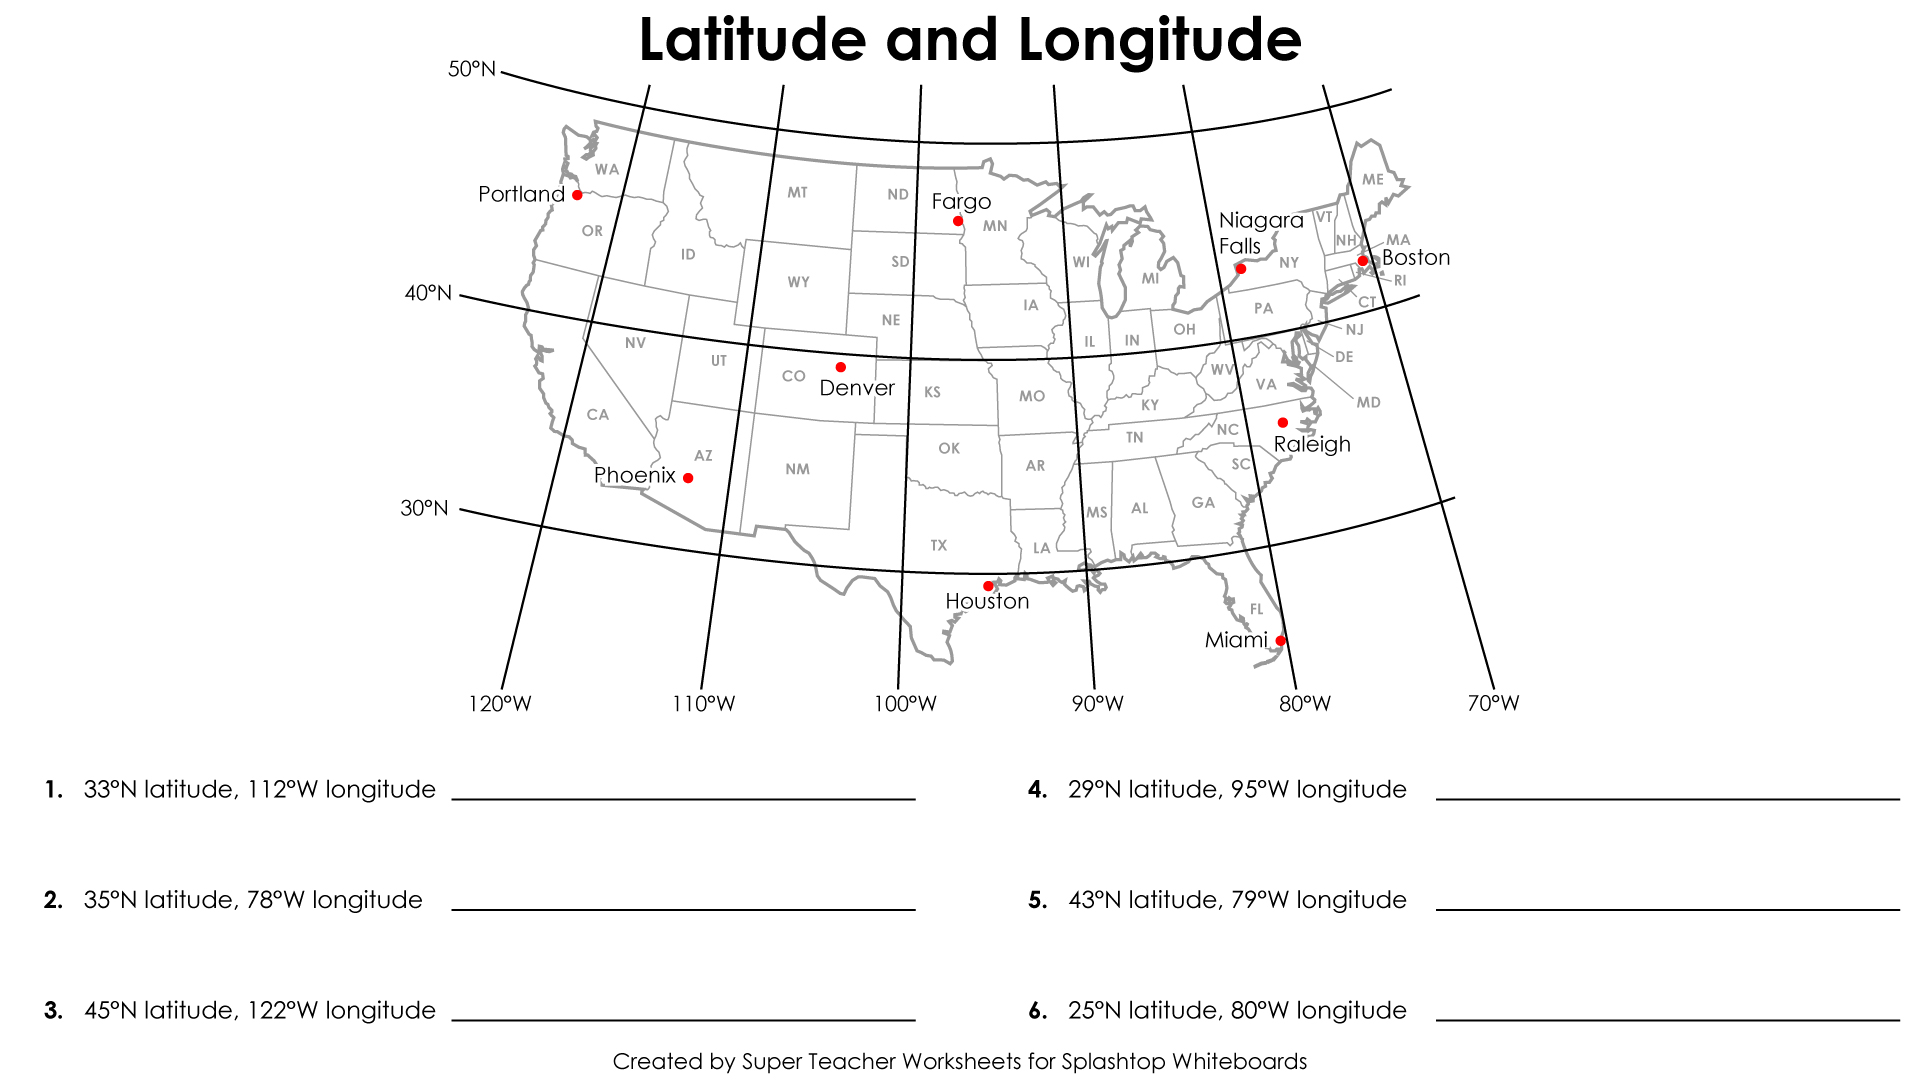 USA Latitude and Longitude Worksheet Image